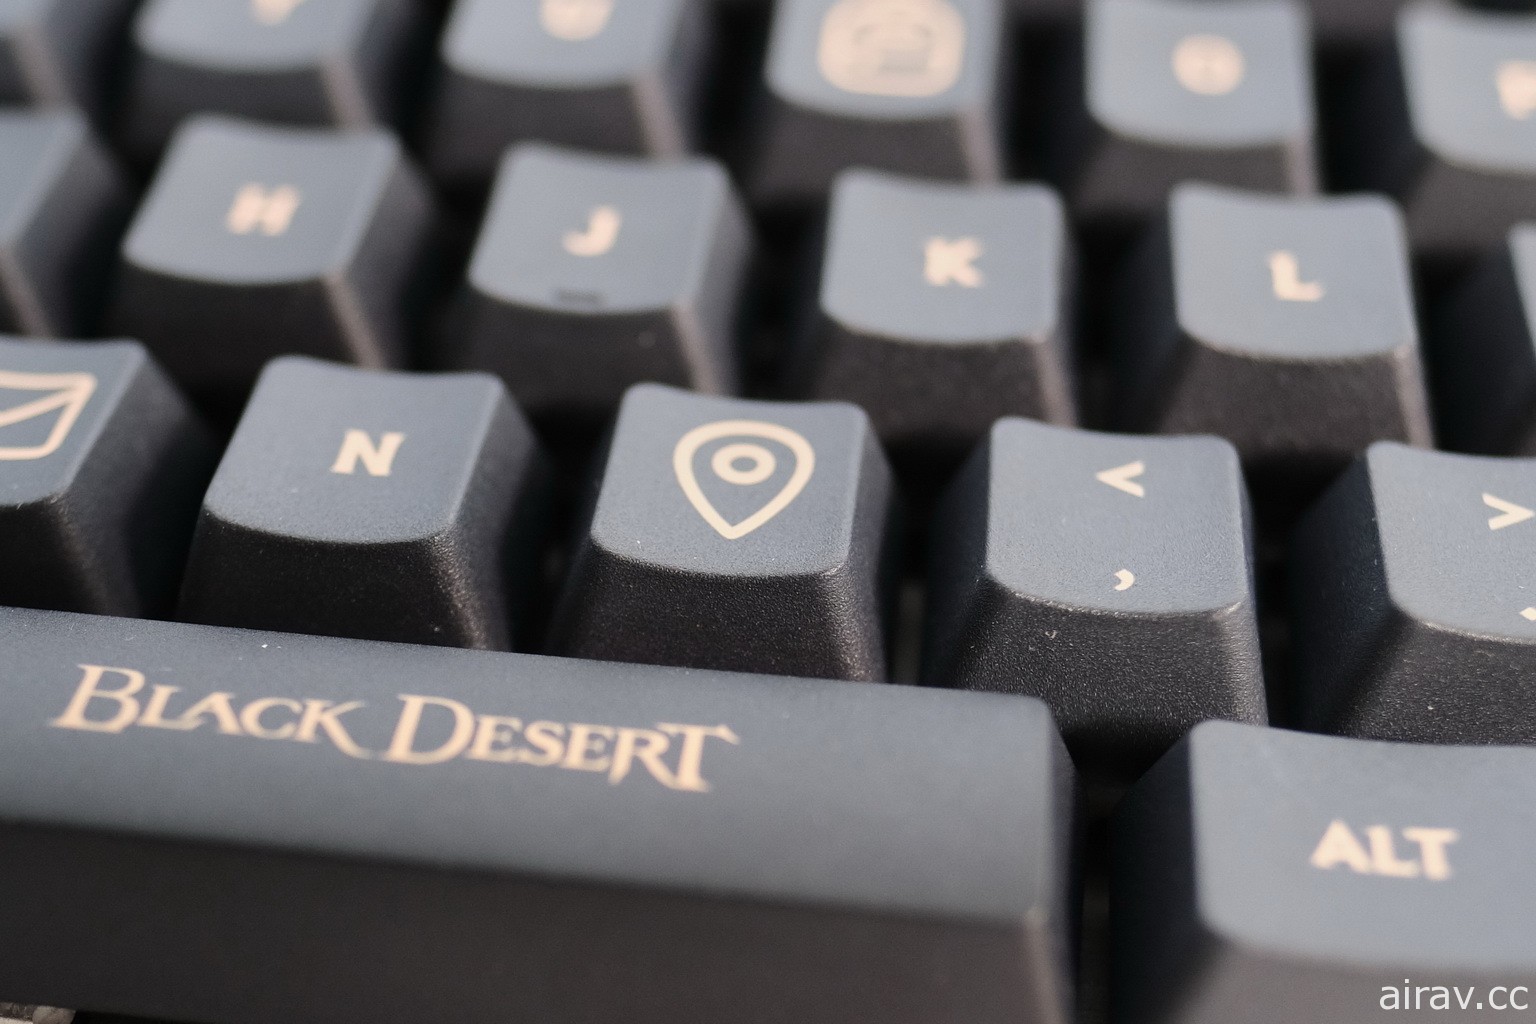 《黑色沙漠》X Logitech G 鍵盤聯名鍵帽組開箱 結合世界地圖、背包等專屬 icon